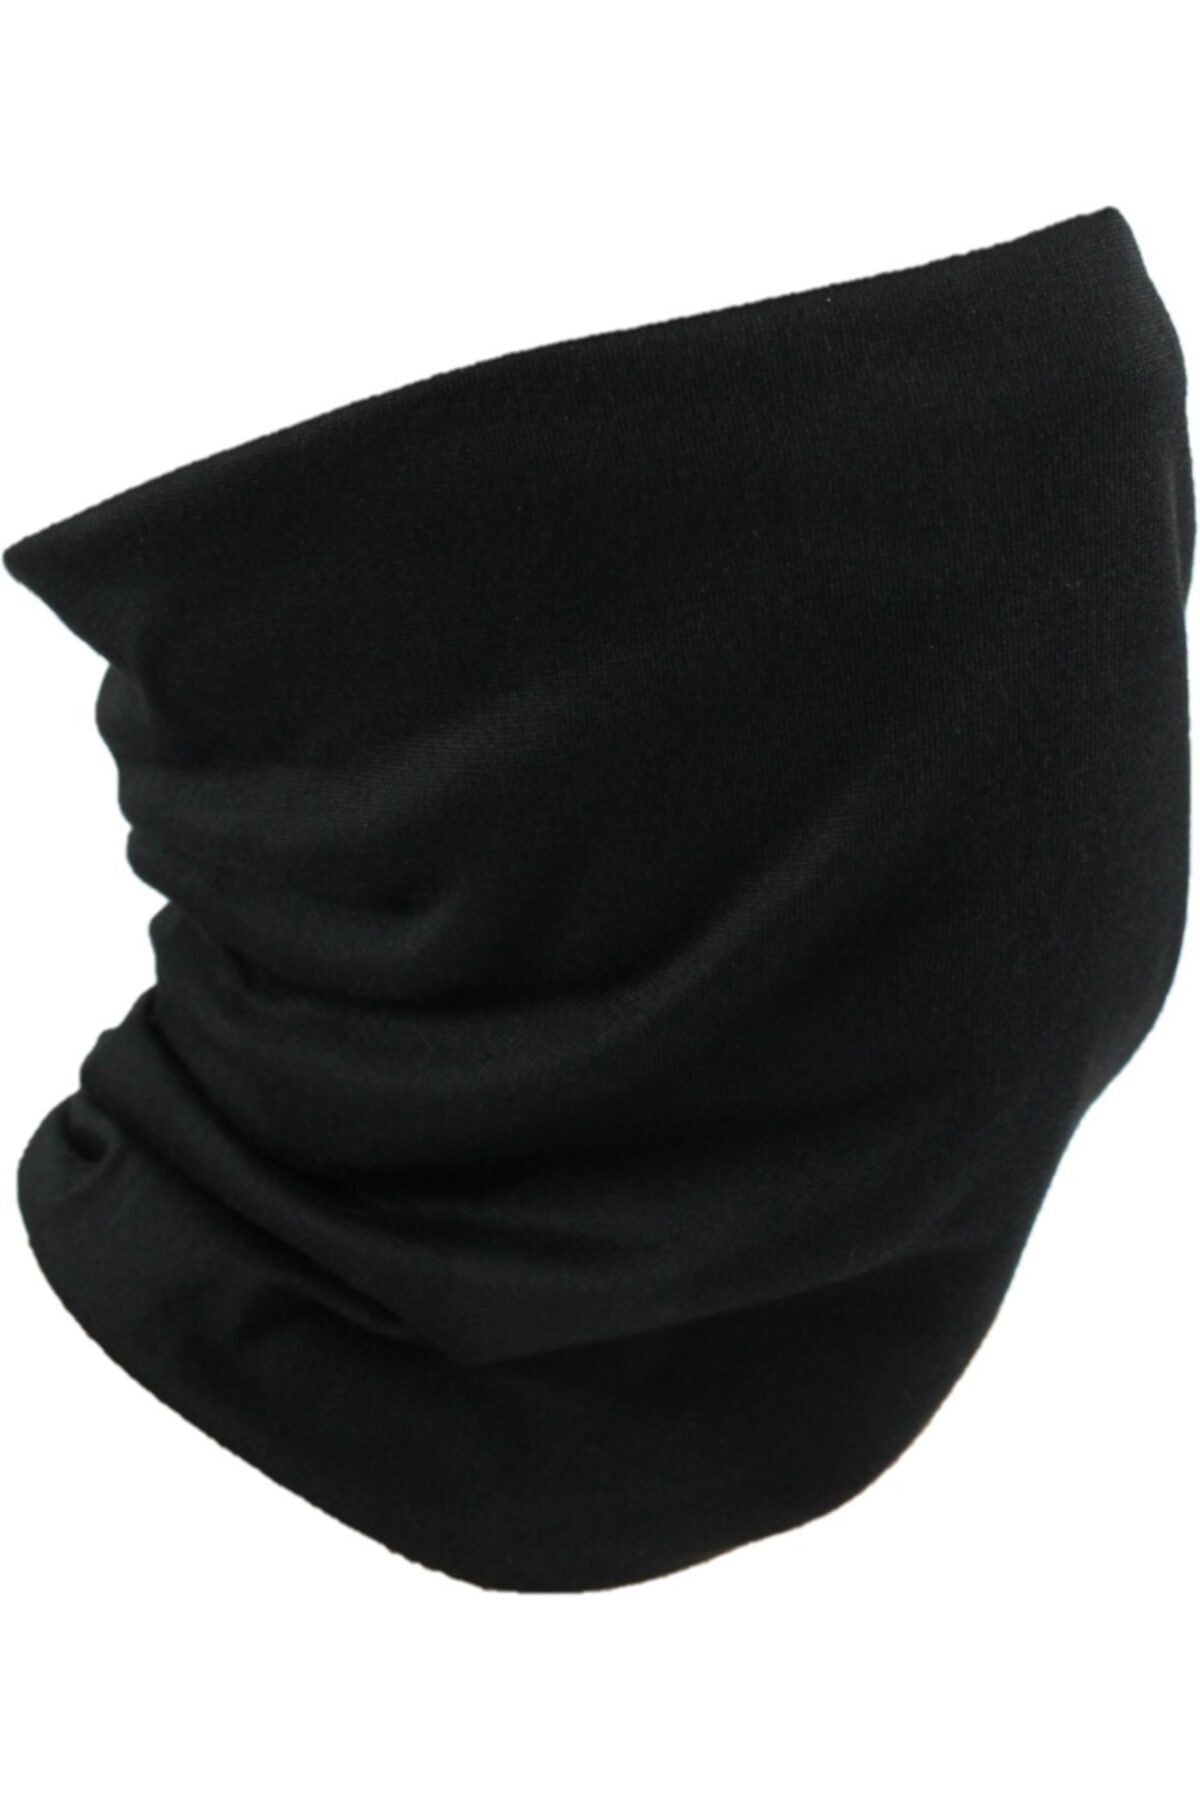 ŞapkaIdünyasi Unisex Beyaz Renk Çok Fonksiyonlu Buff Bandana Boyunluk Yüz Maskesi